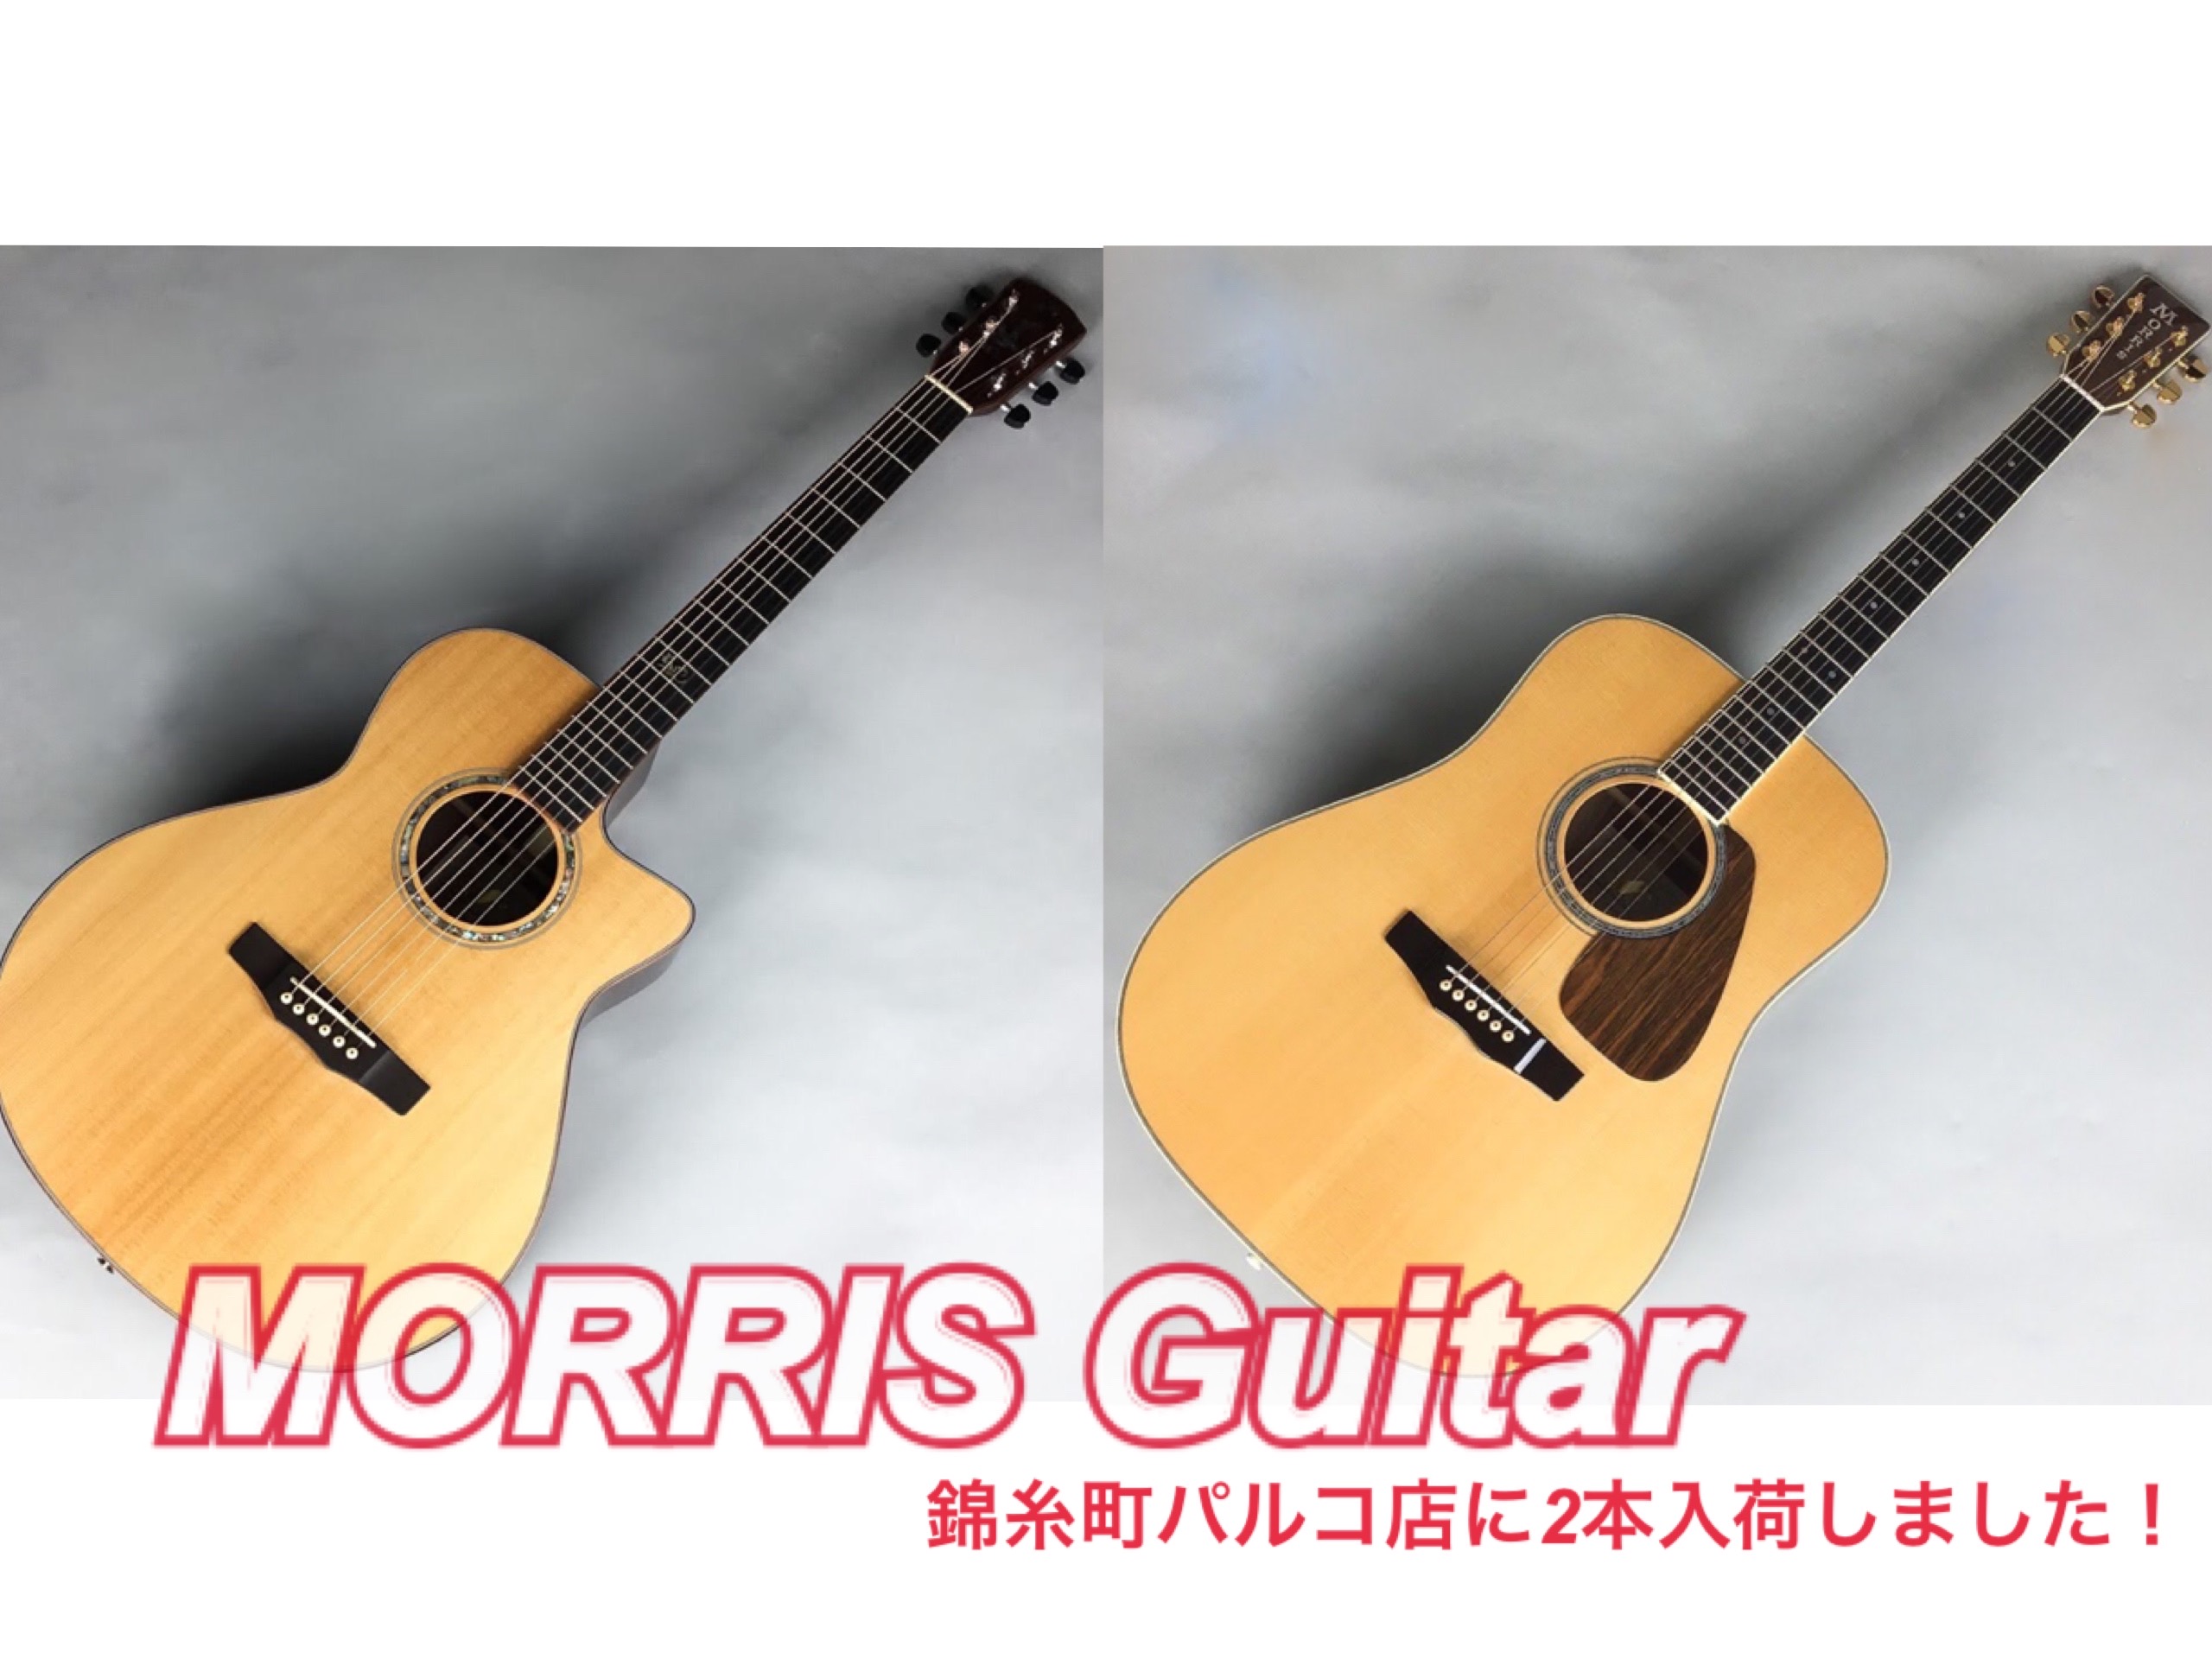 穂高(現モーリス) クラシックギター60's